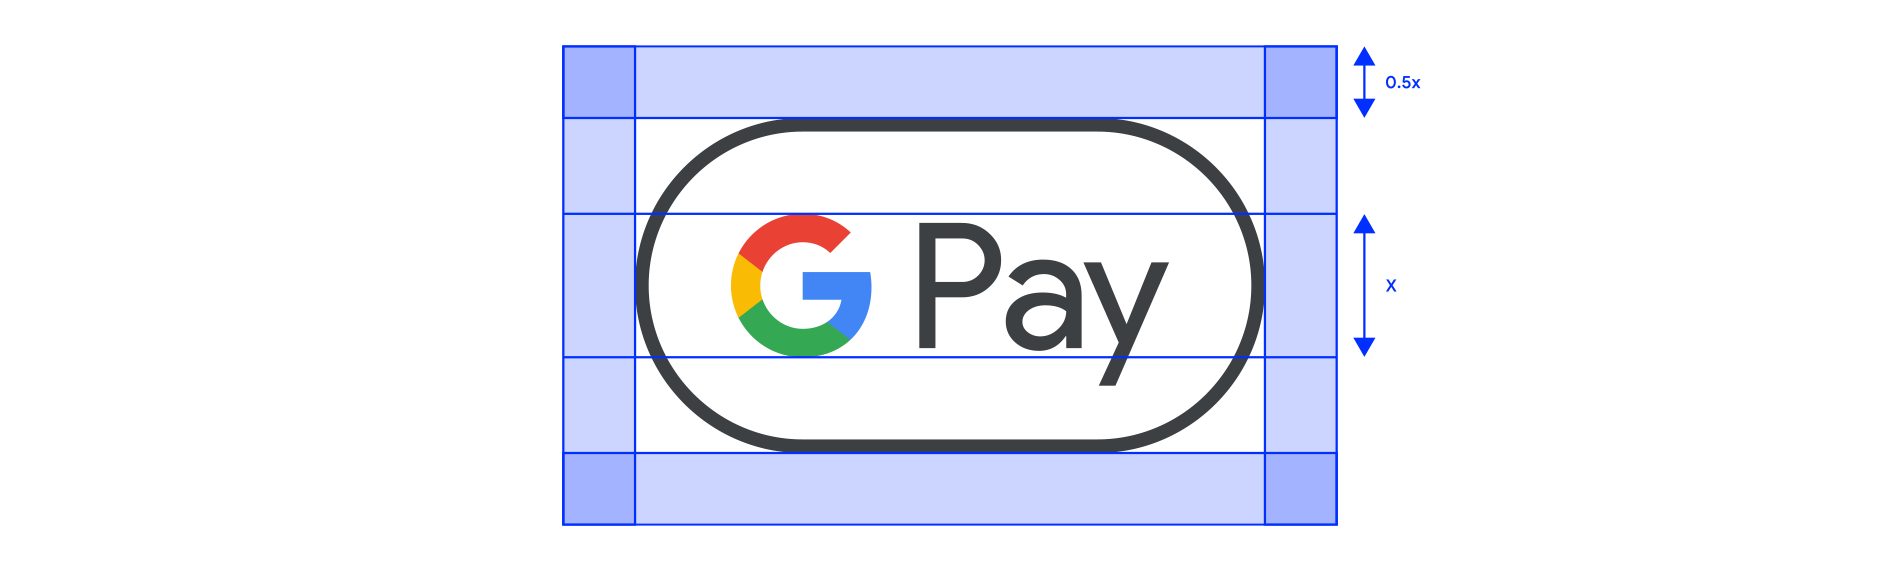 Google Pay 标识留白空间示例